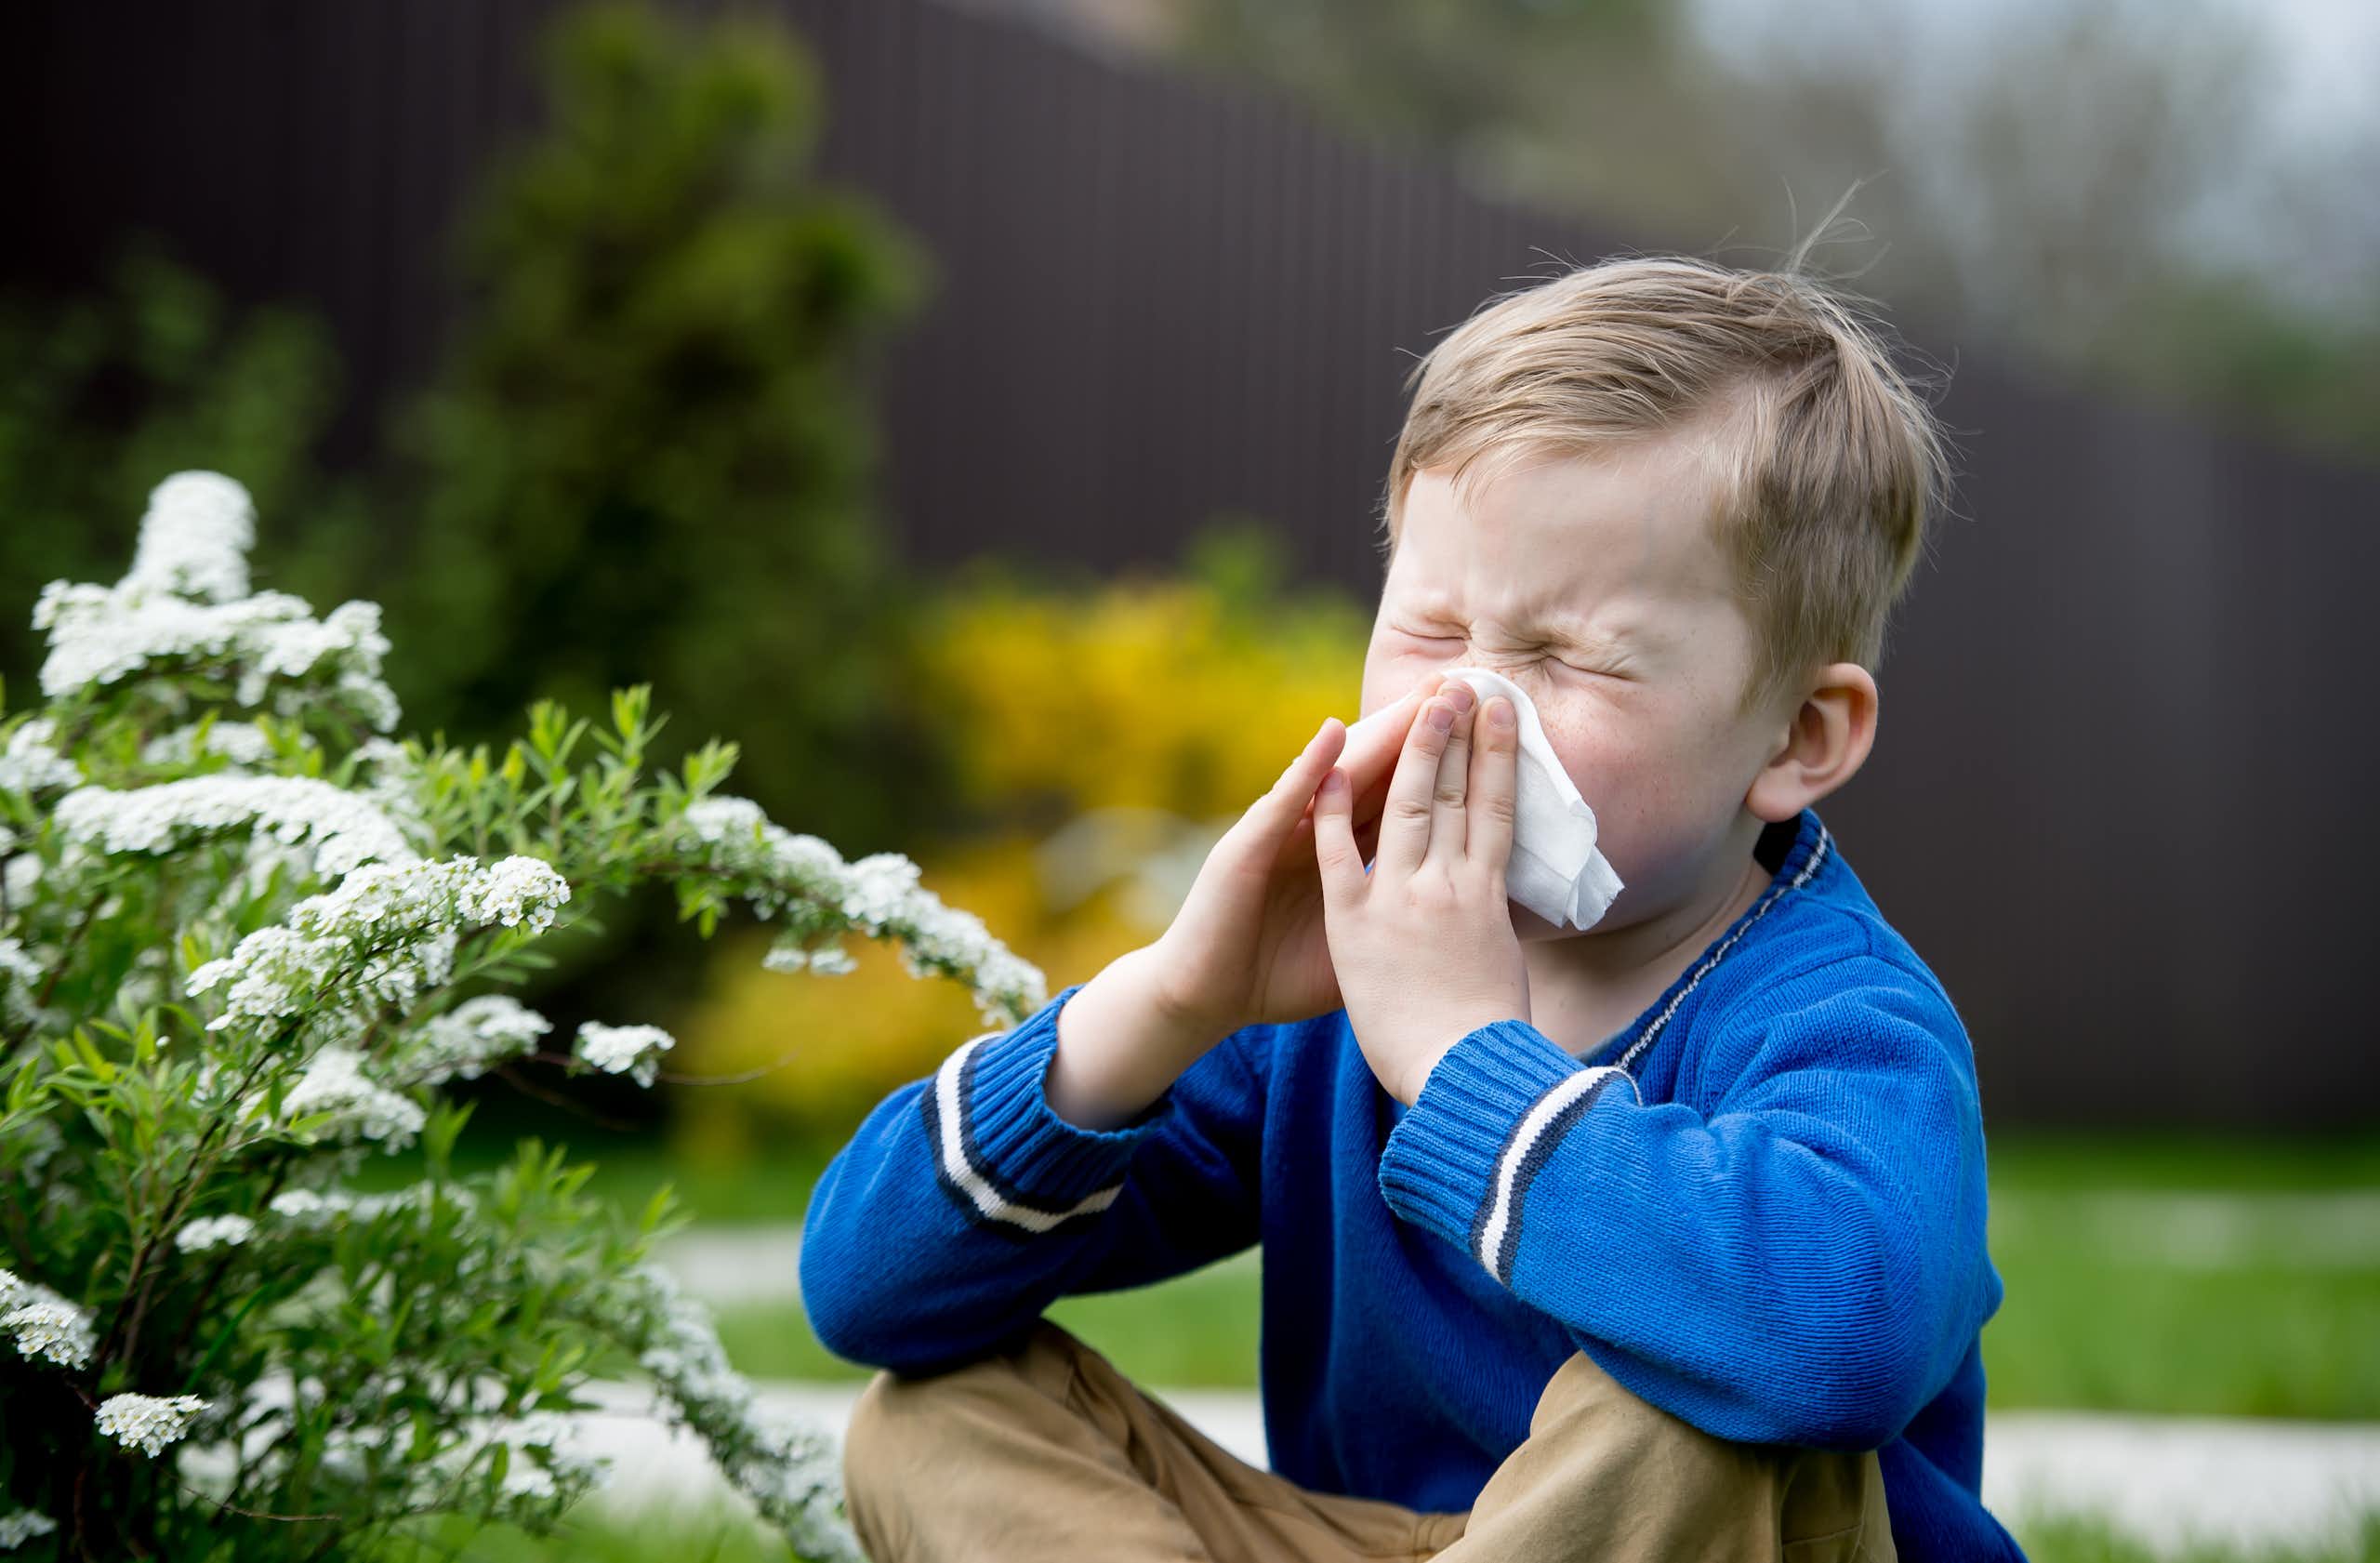 ¿Por qué aumentan tanto las alergias? Una clave puede estar en la microbiota